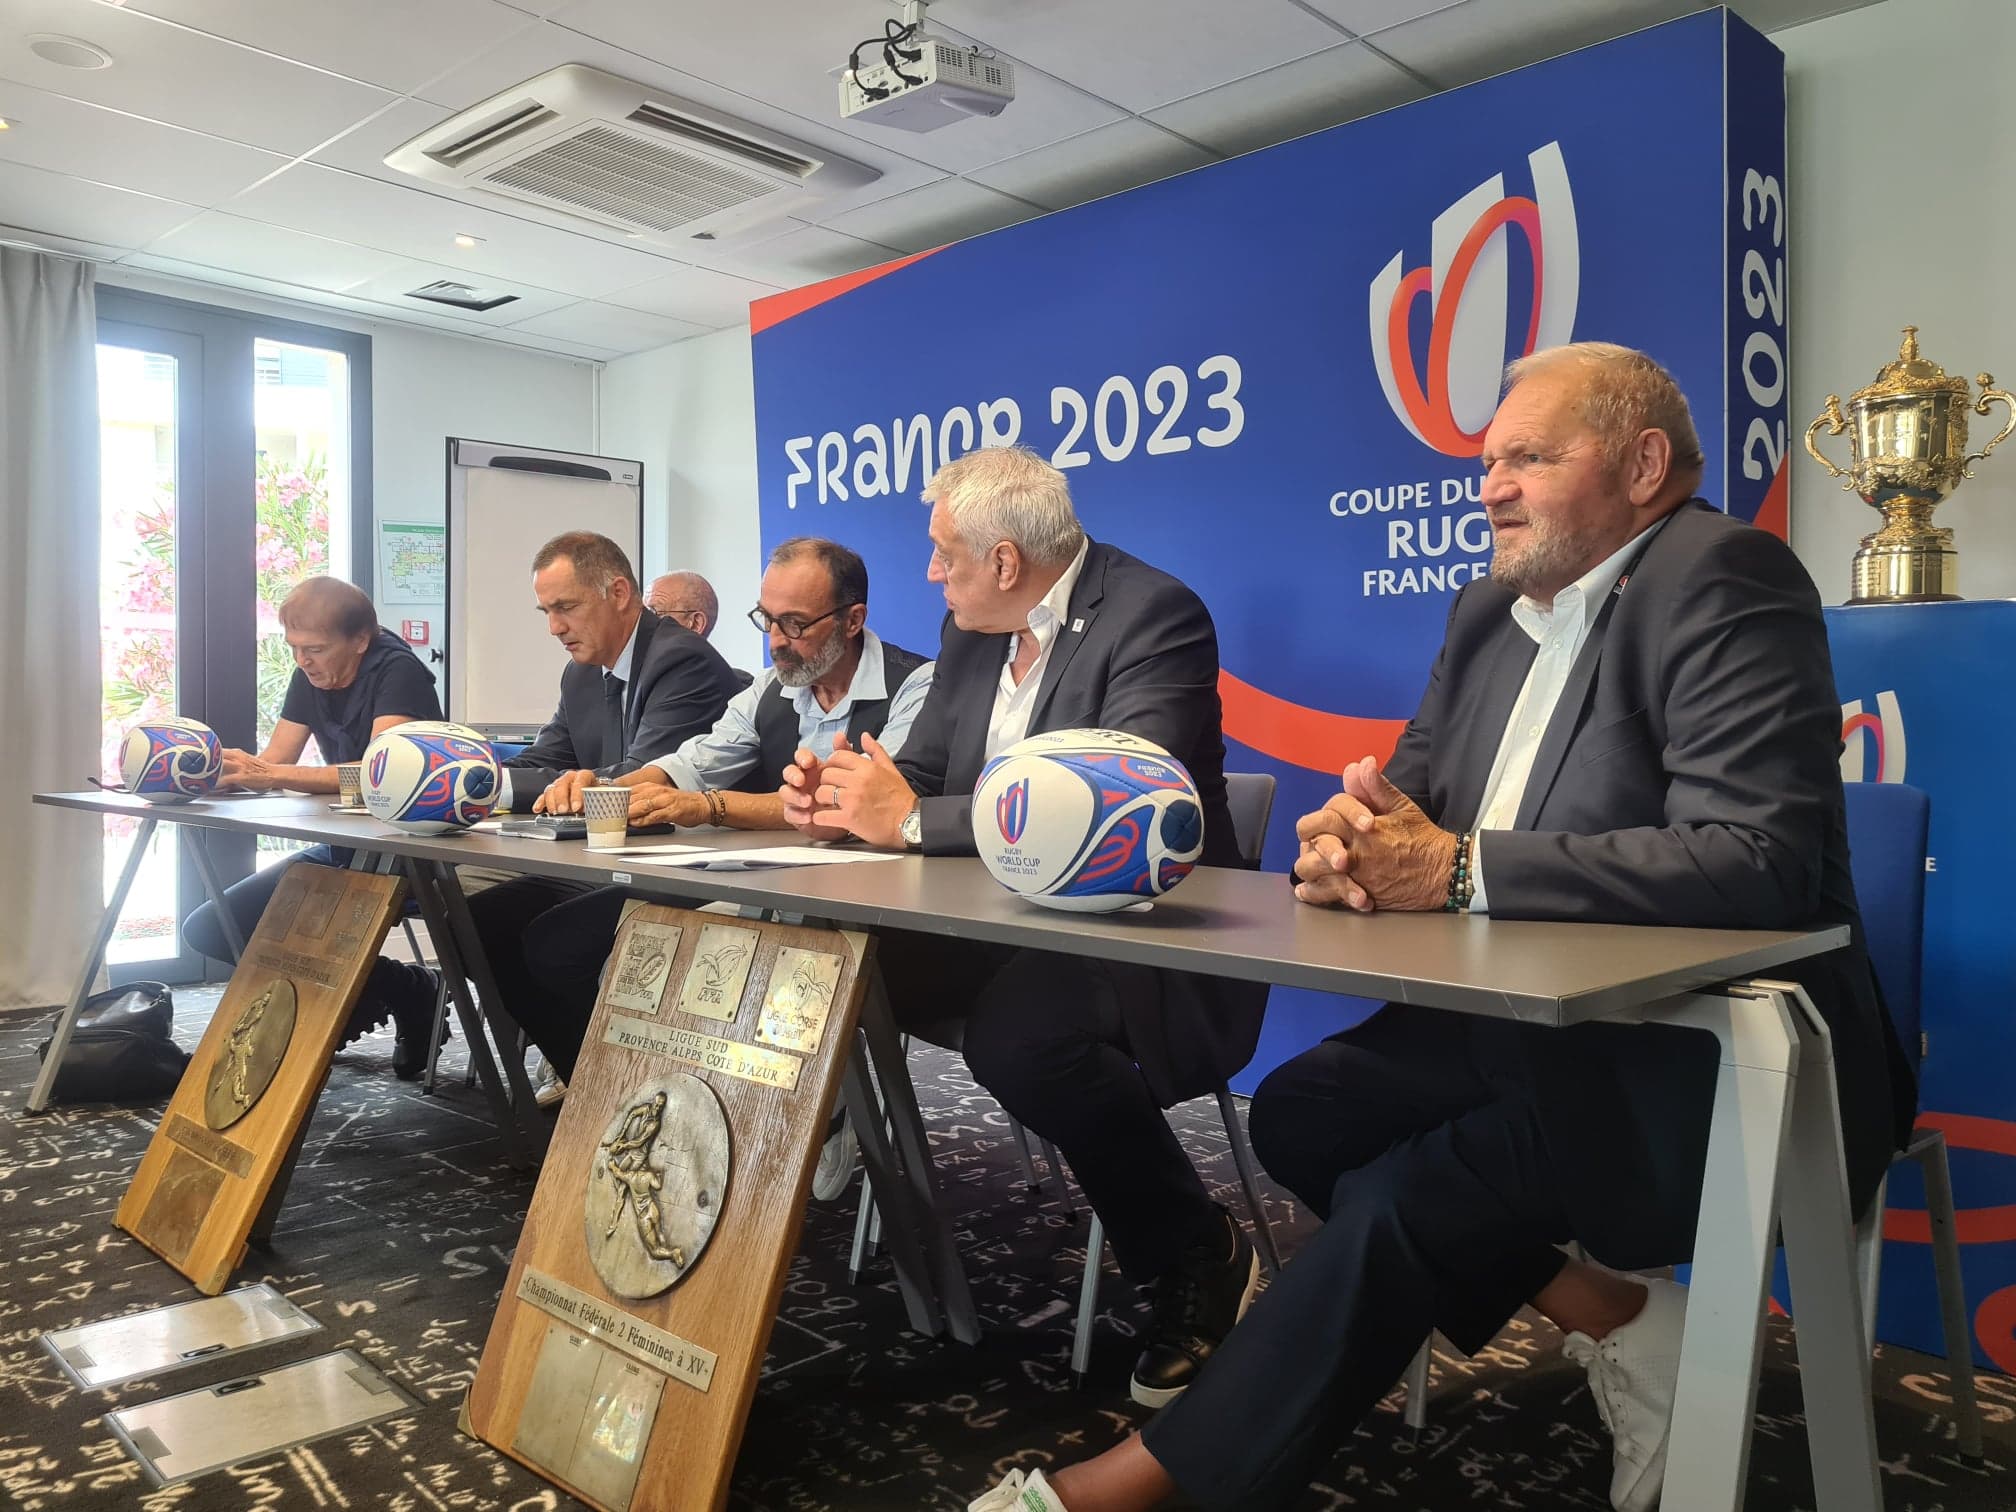 Les organisateurs de la Coupe du Monde de Rugby en France en 2023 étaient à Biguglia ce 8 juin pour définir le rôle de la Corse dans l'évènement. Crédits Photo : Pierre-Manuel Pescetti